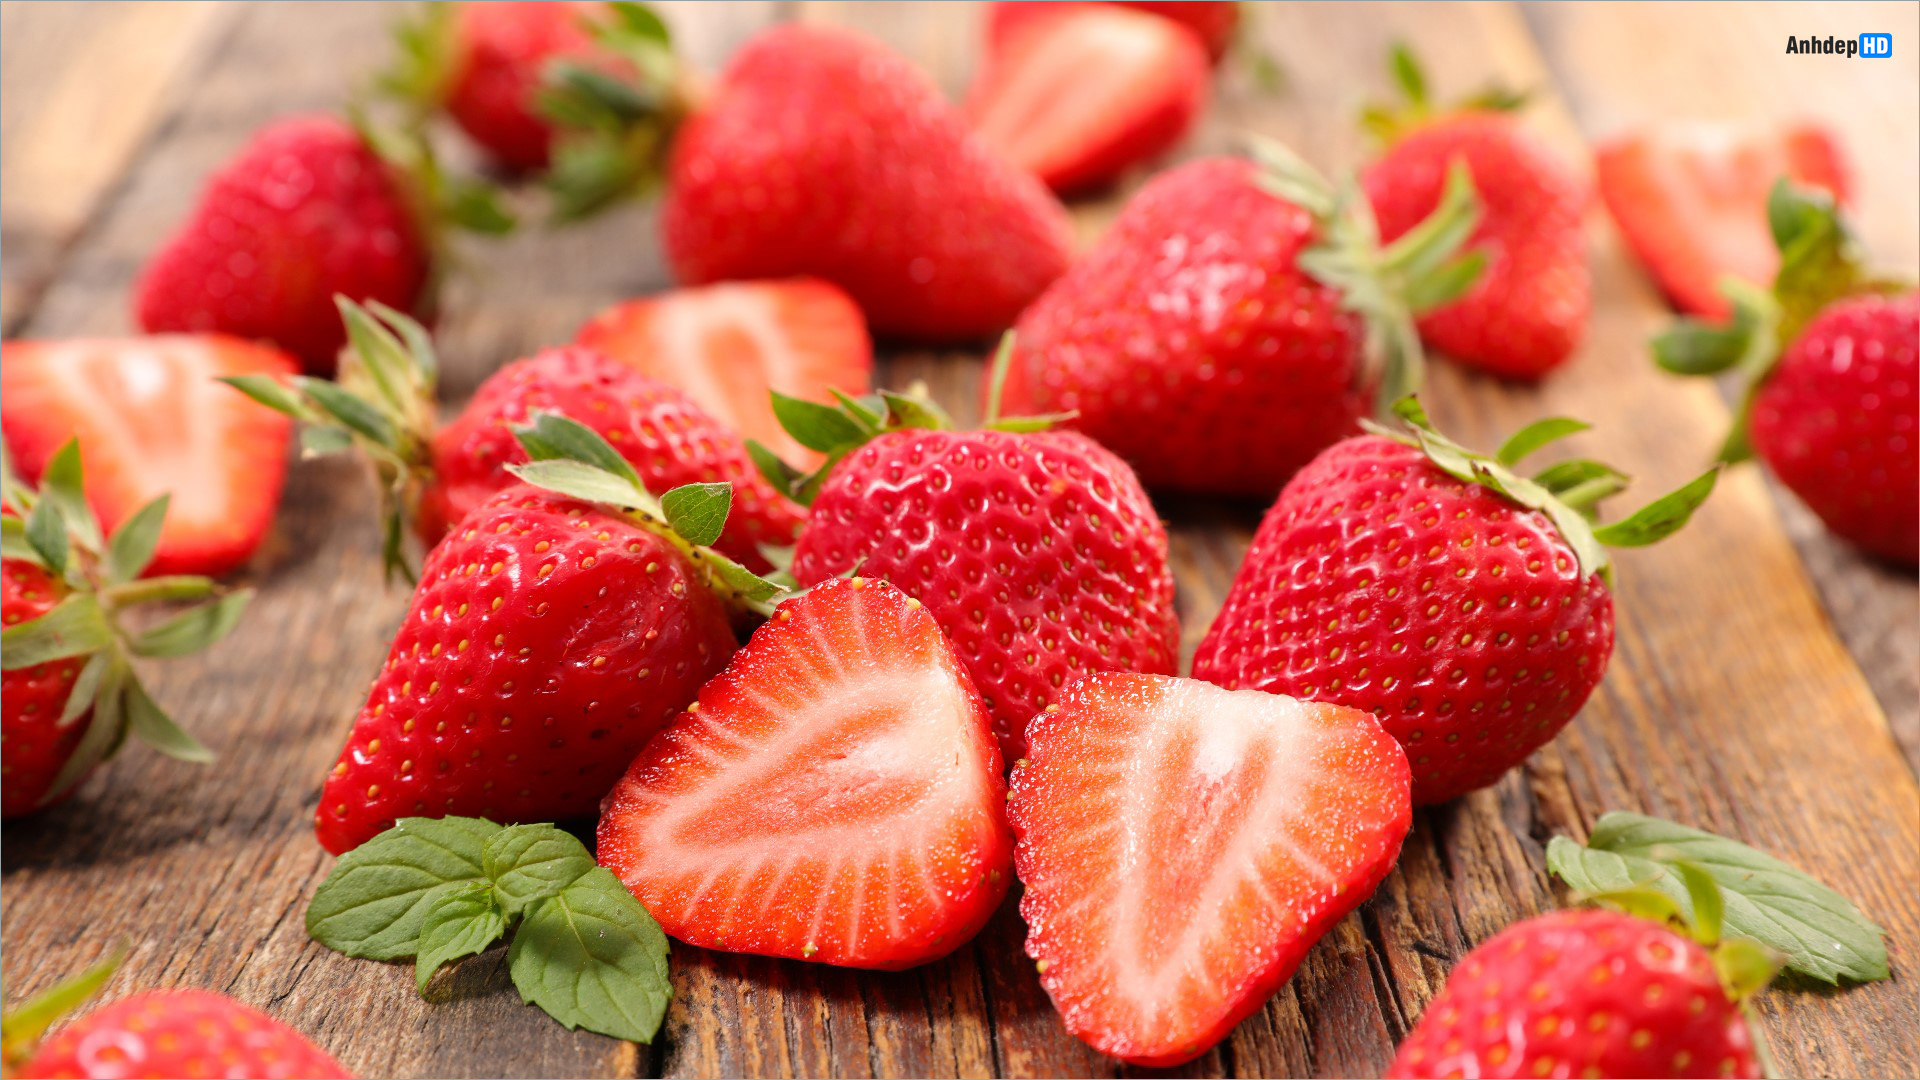 Cute Fresh Strawberry Pattern Red Fruit Vector có sẵn miễn phí bản quyền  1687841374  Shutterstock